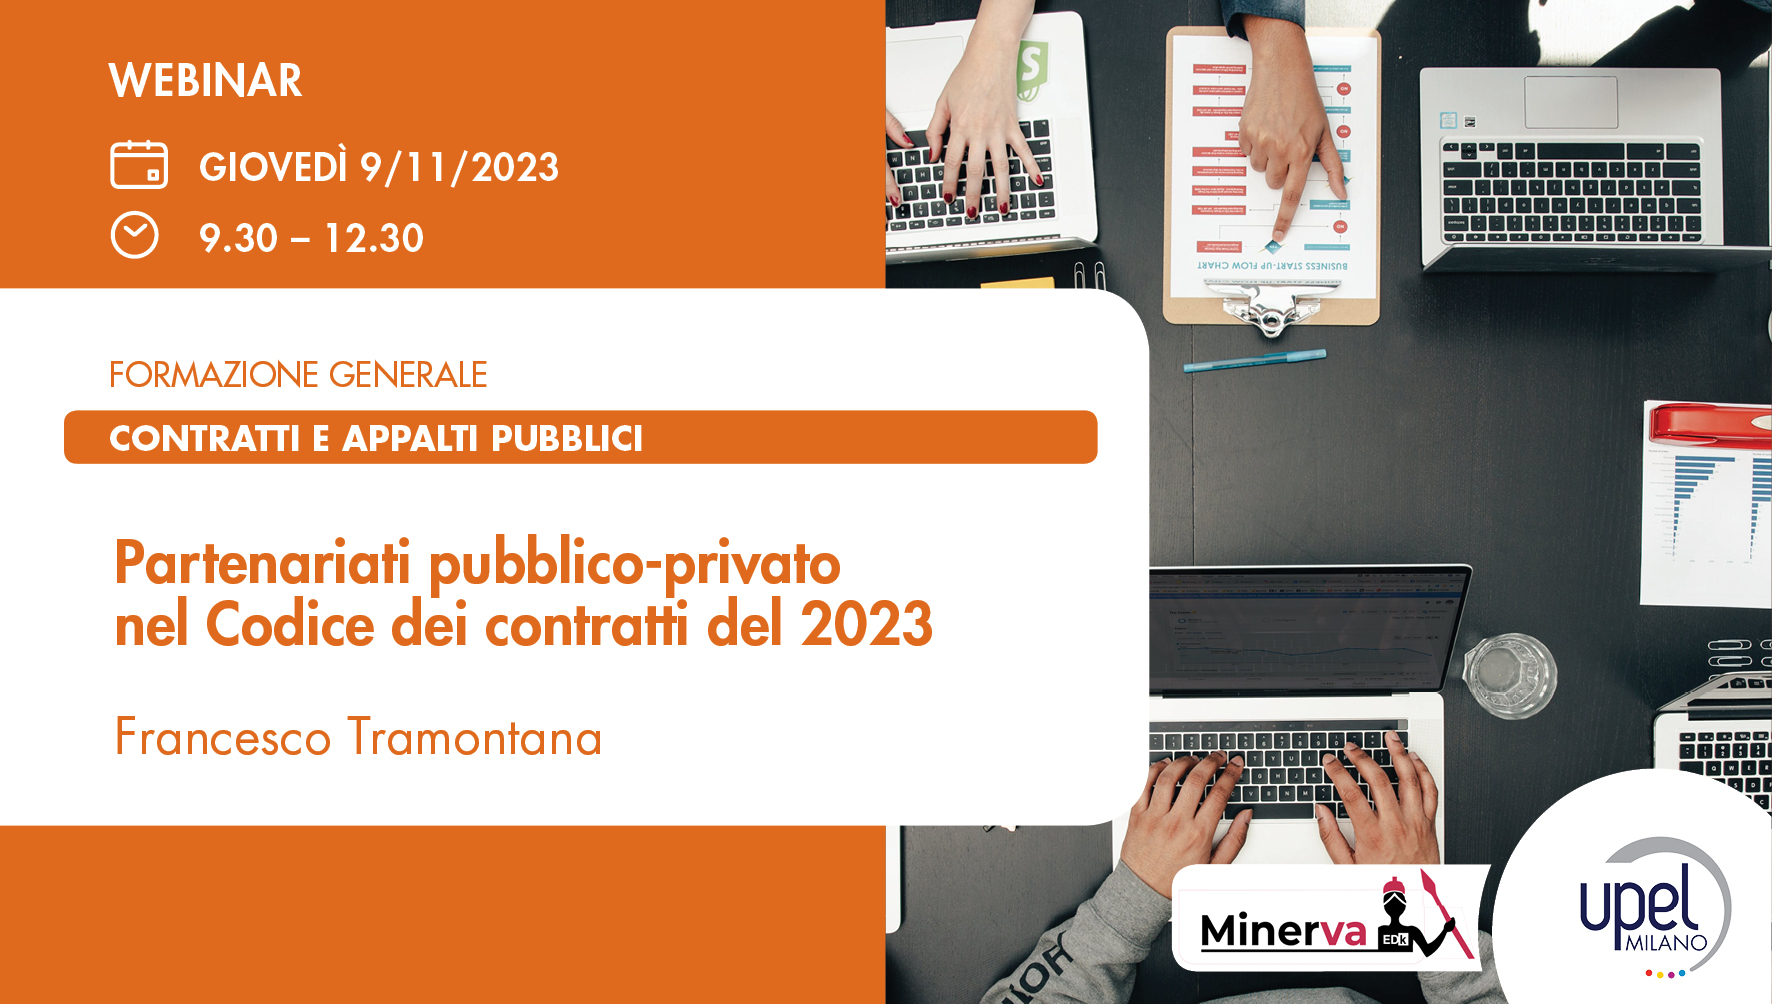 Partenariati pubblico-privato nel Codice dei contratti del 2023